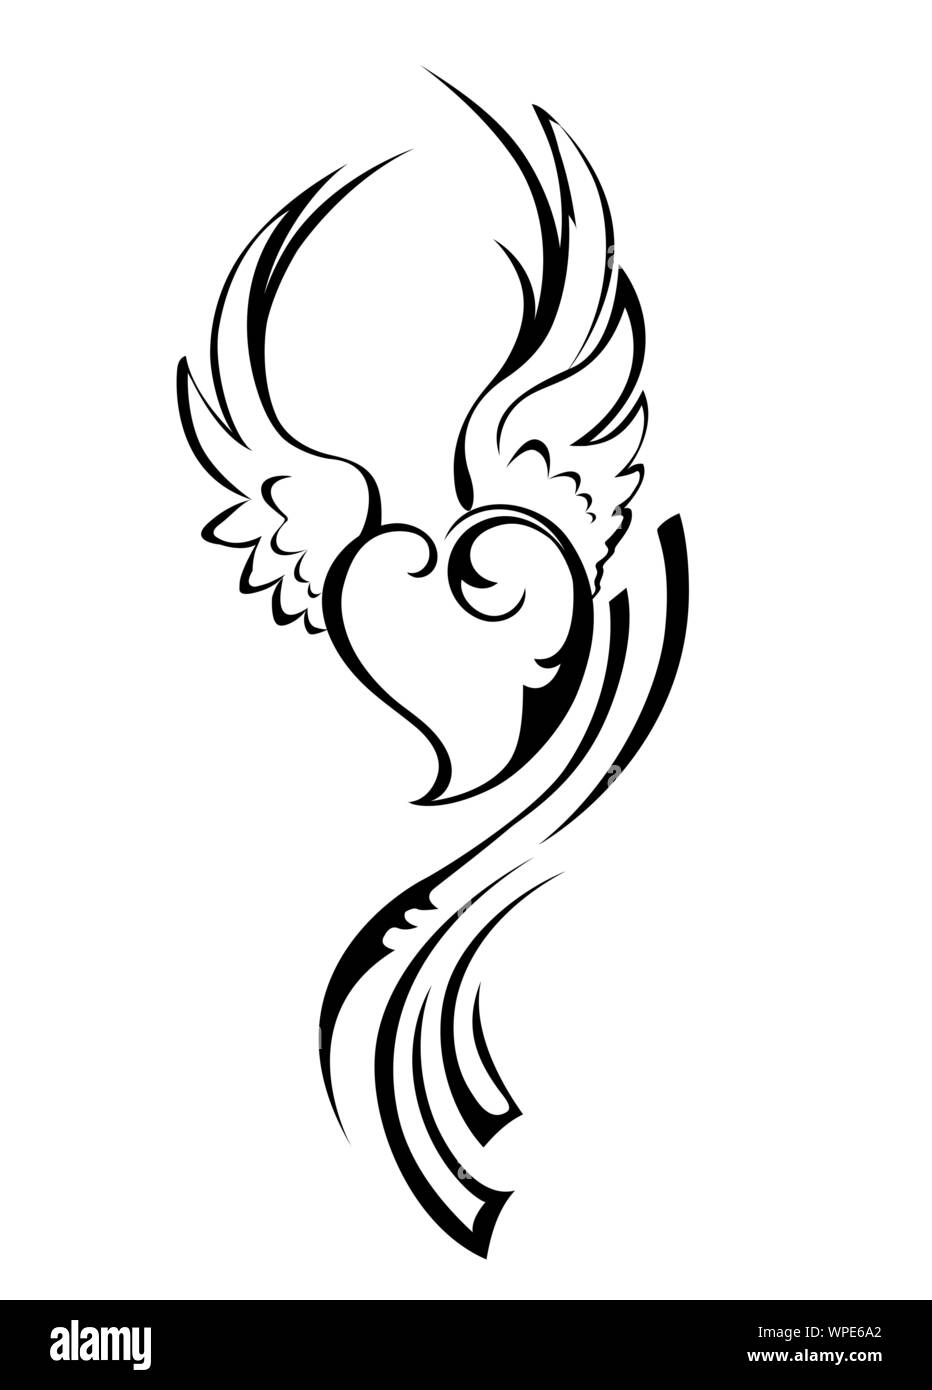 Angioletto cuore con le ali disegnate dal contorno nero in stile tatuaggio su sfondo bianco. Illustrazione Vettoriale